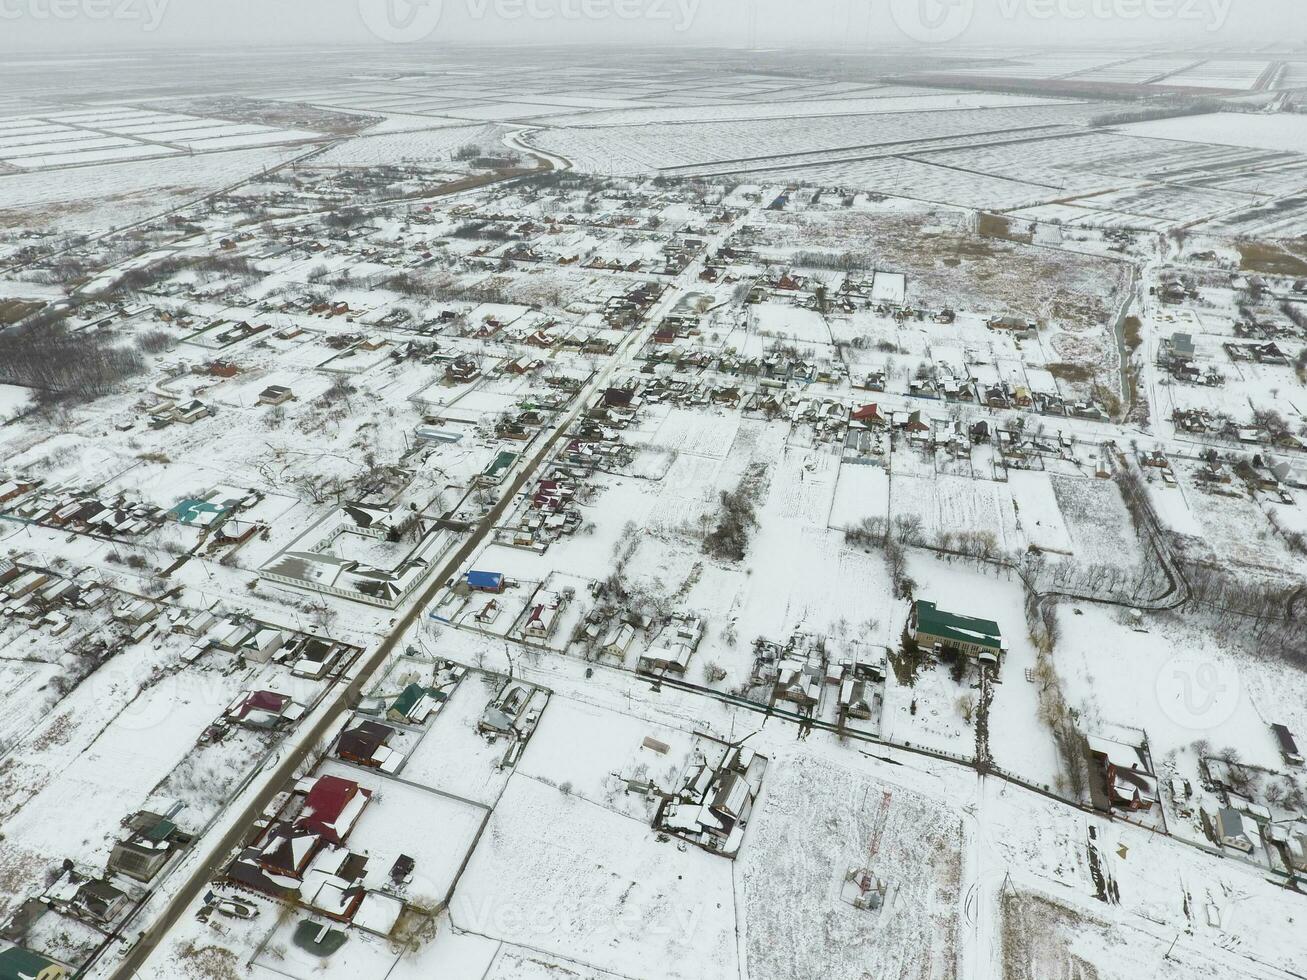 invierno ver desde el aves ojo ver de el aldea. el calles son cubierto con nieve foto